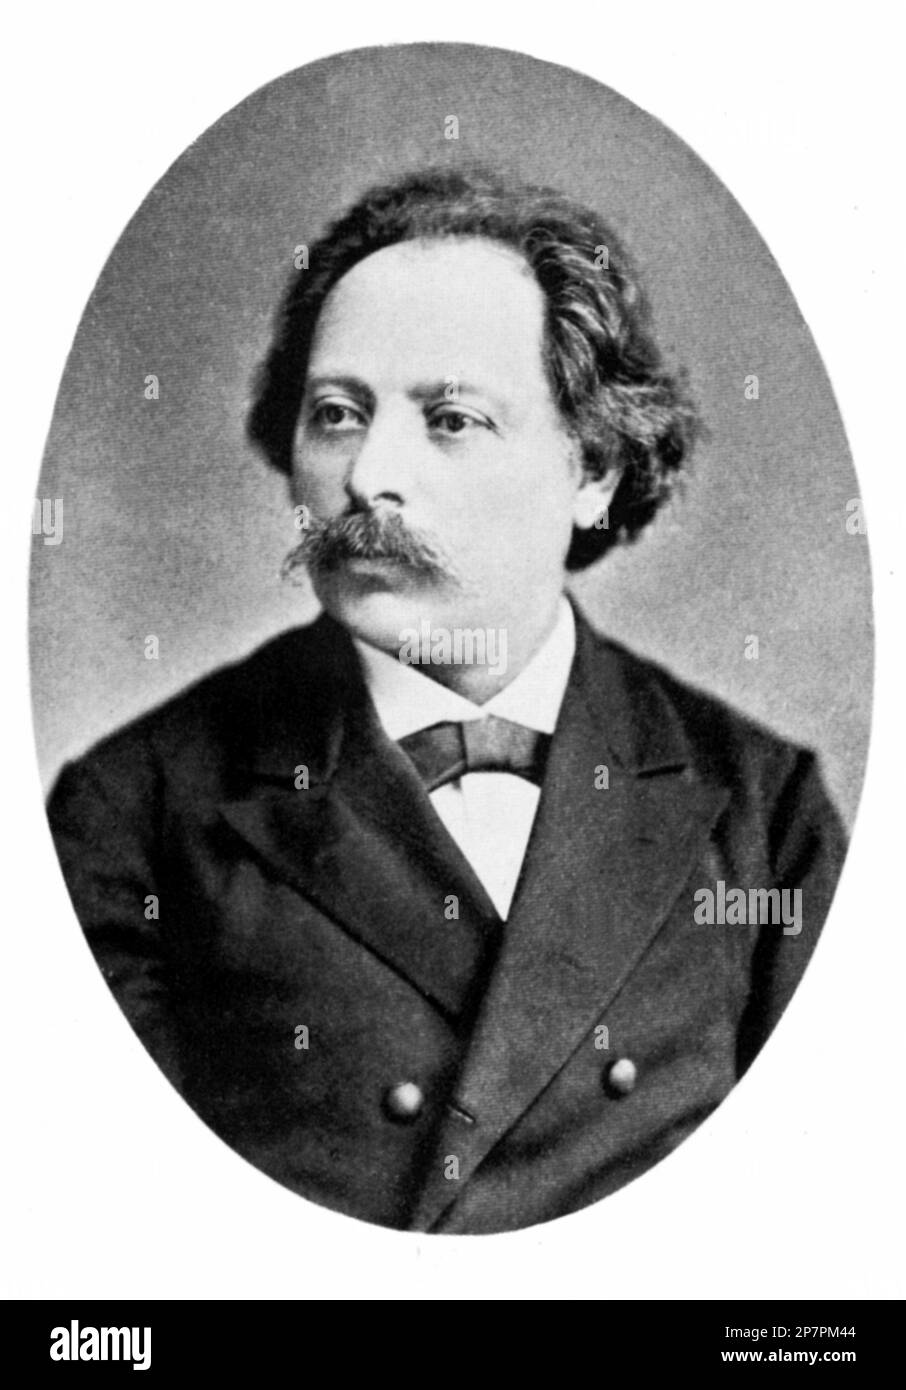 1875 c, ÖSTERREICH : der ungarische Musikkomponist KARL GOLDMARK ( 1830 - 1915 ) , der in Wien aktiv ist . Er schrieb Opern, Orchestermusik, Kammermusik usw. Seine Oper, DIE KÖNIGIN VON SHEBA und seine RUSTIKALE HOCHZEITSMUSIK werden noch aufgeführt . Foto: J. Lowy , Wien . - COMPOSITORE - OPERA LIRICA - CLASSICA - KLASSISCH - PORTRAIT - RITRATTO - MUSICISTA - MUSICA - BAFFI - SCHNURRBART - KRAGEN - COLLETTO - CRAVATTA - KRAWATTE - - ARCHIVIO GBB Stockfoto